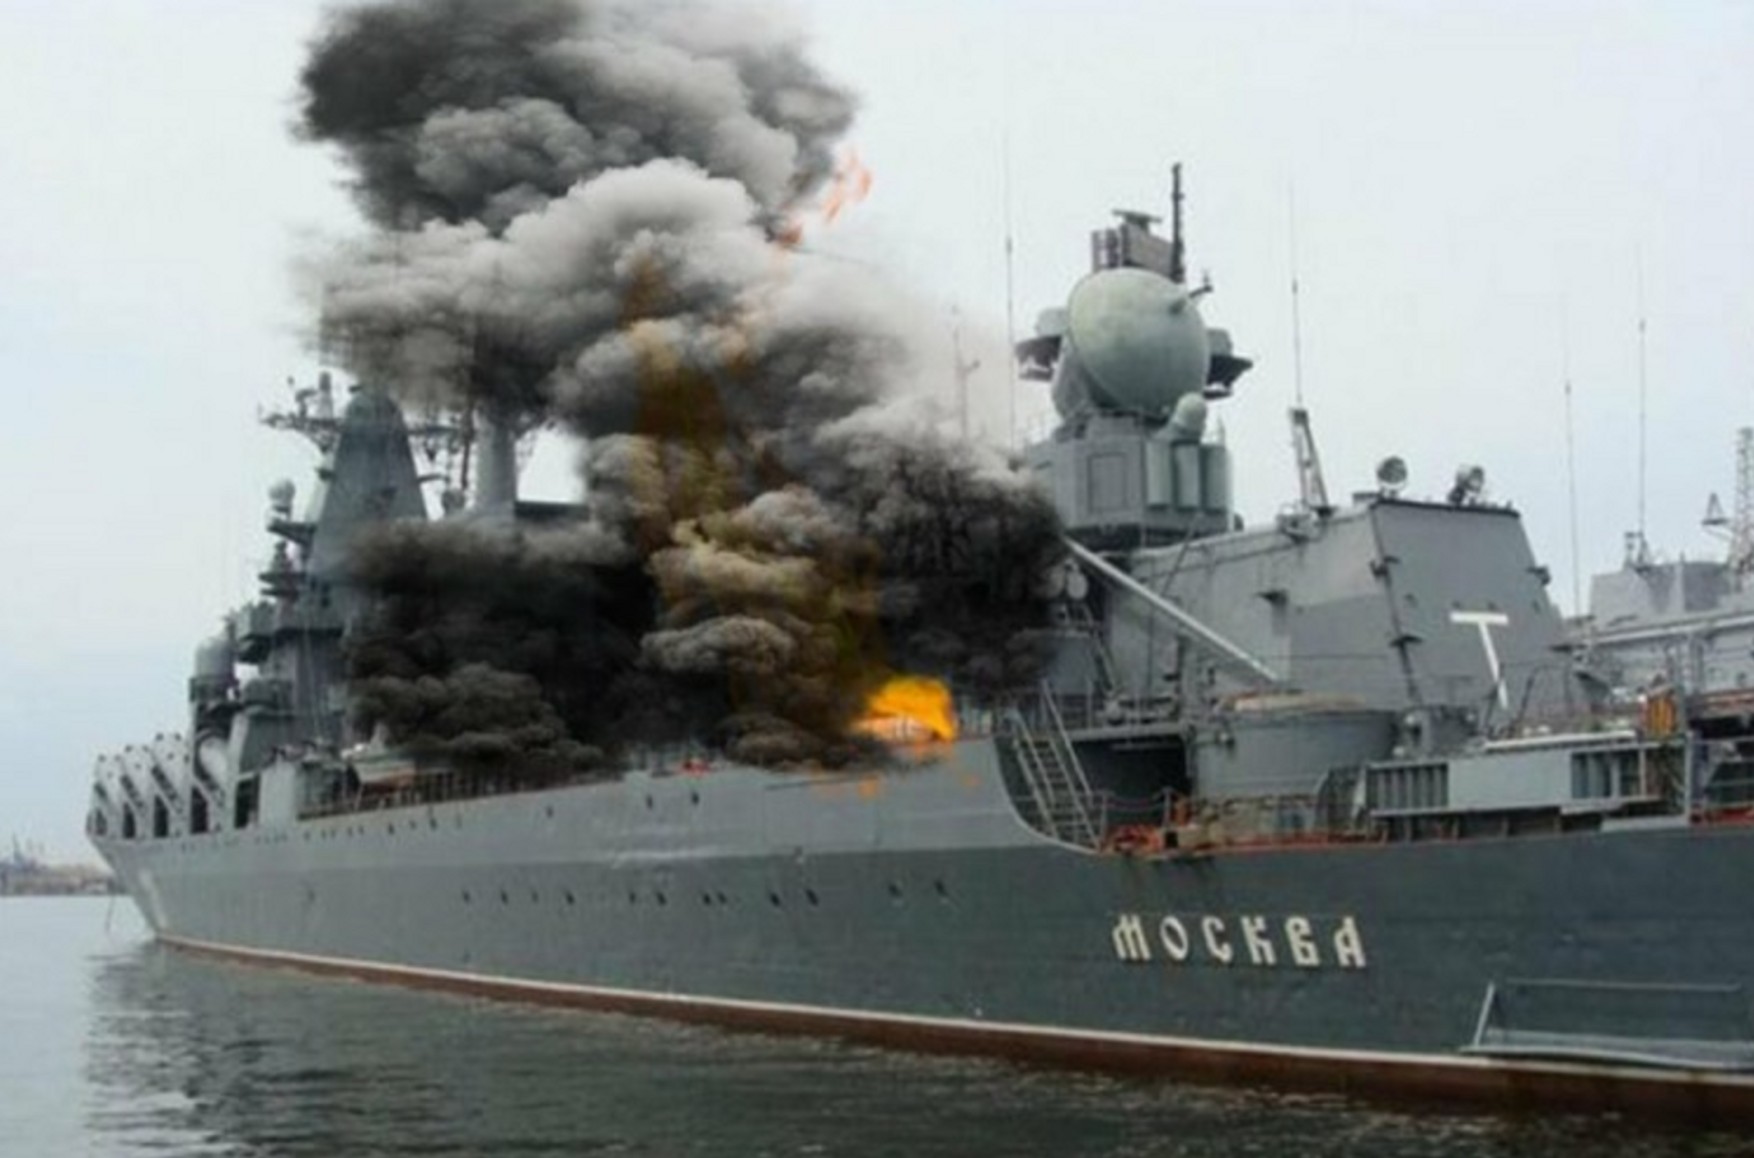 Родители срочников с крейсера «Москва» до сих пор не могут добиться от Минобороны РФ информации о судьбе детей